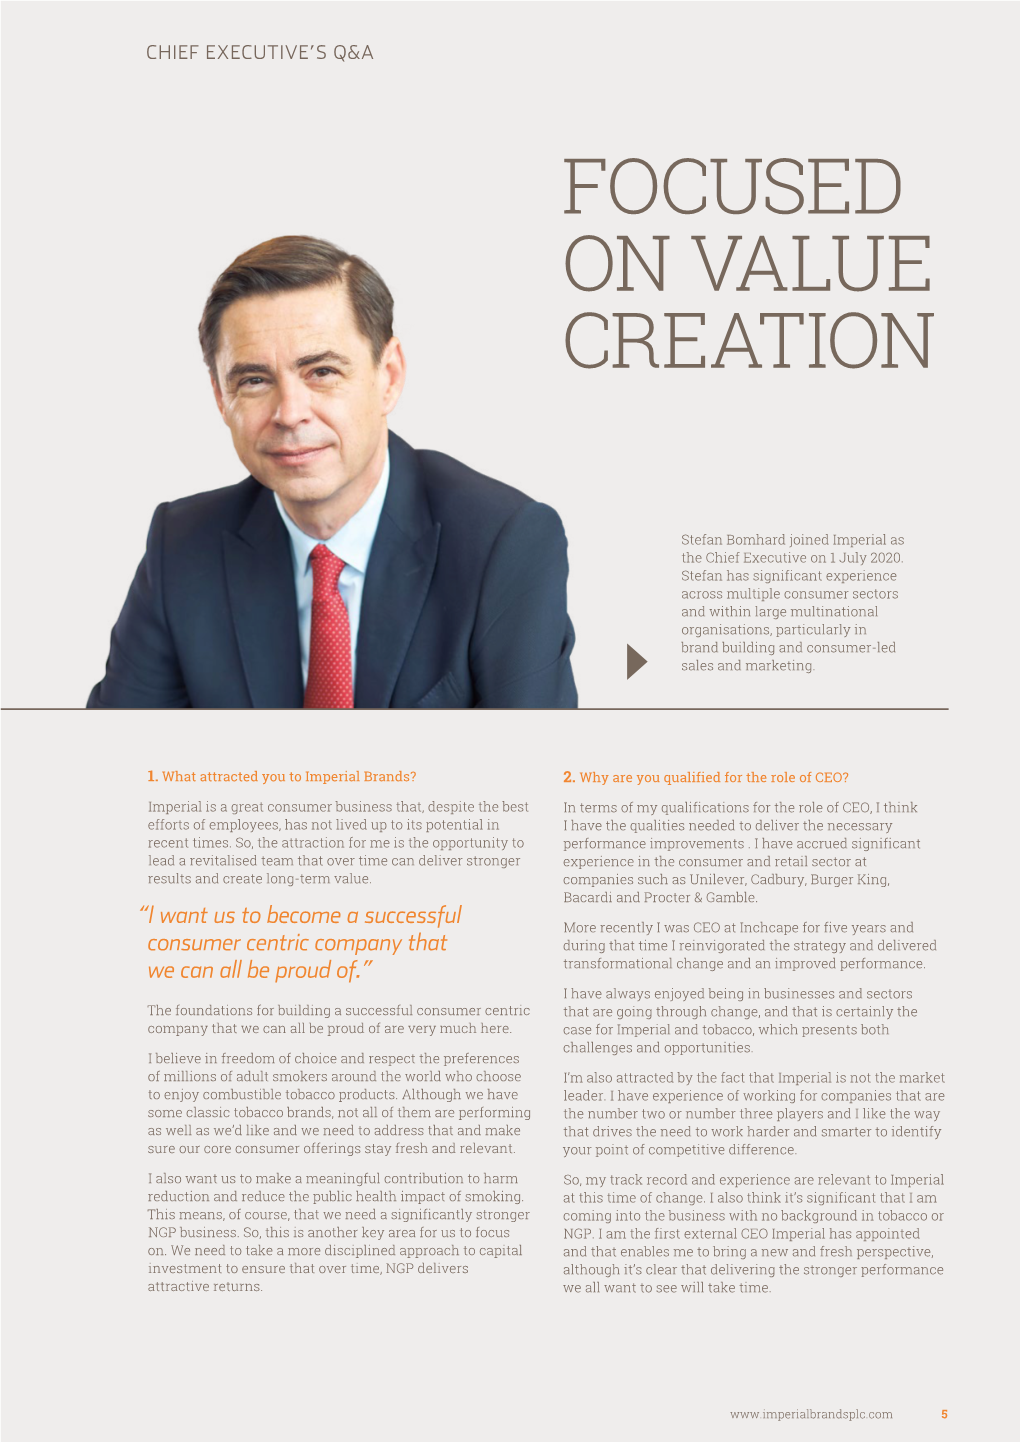 Focused on Value Creation